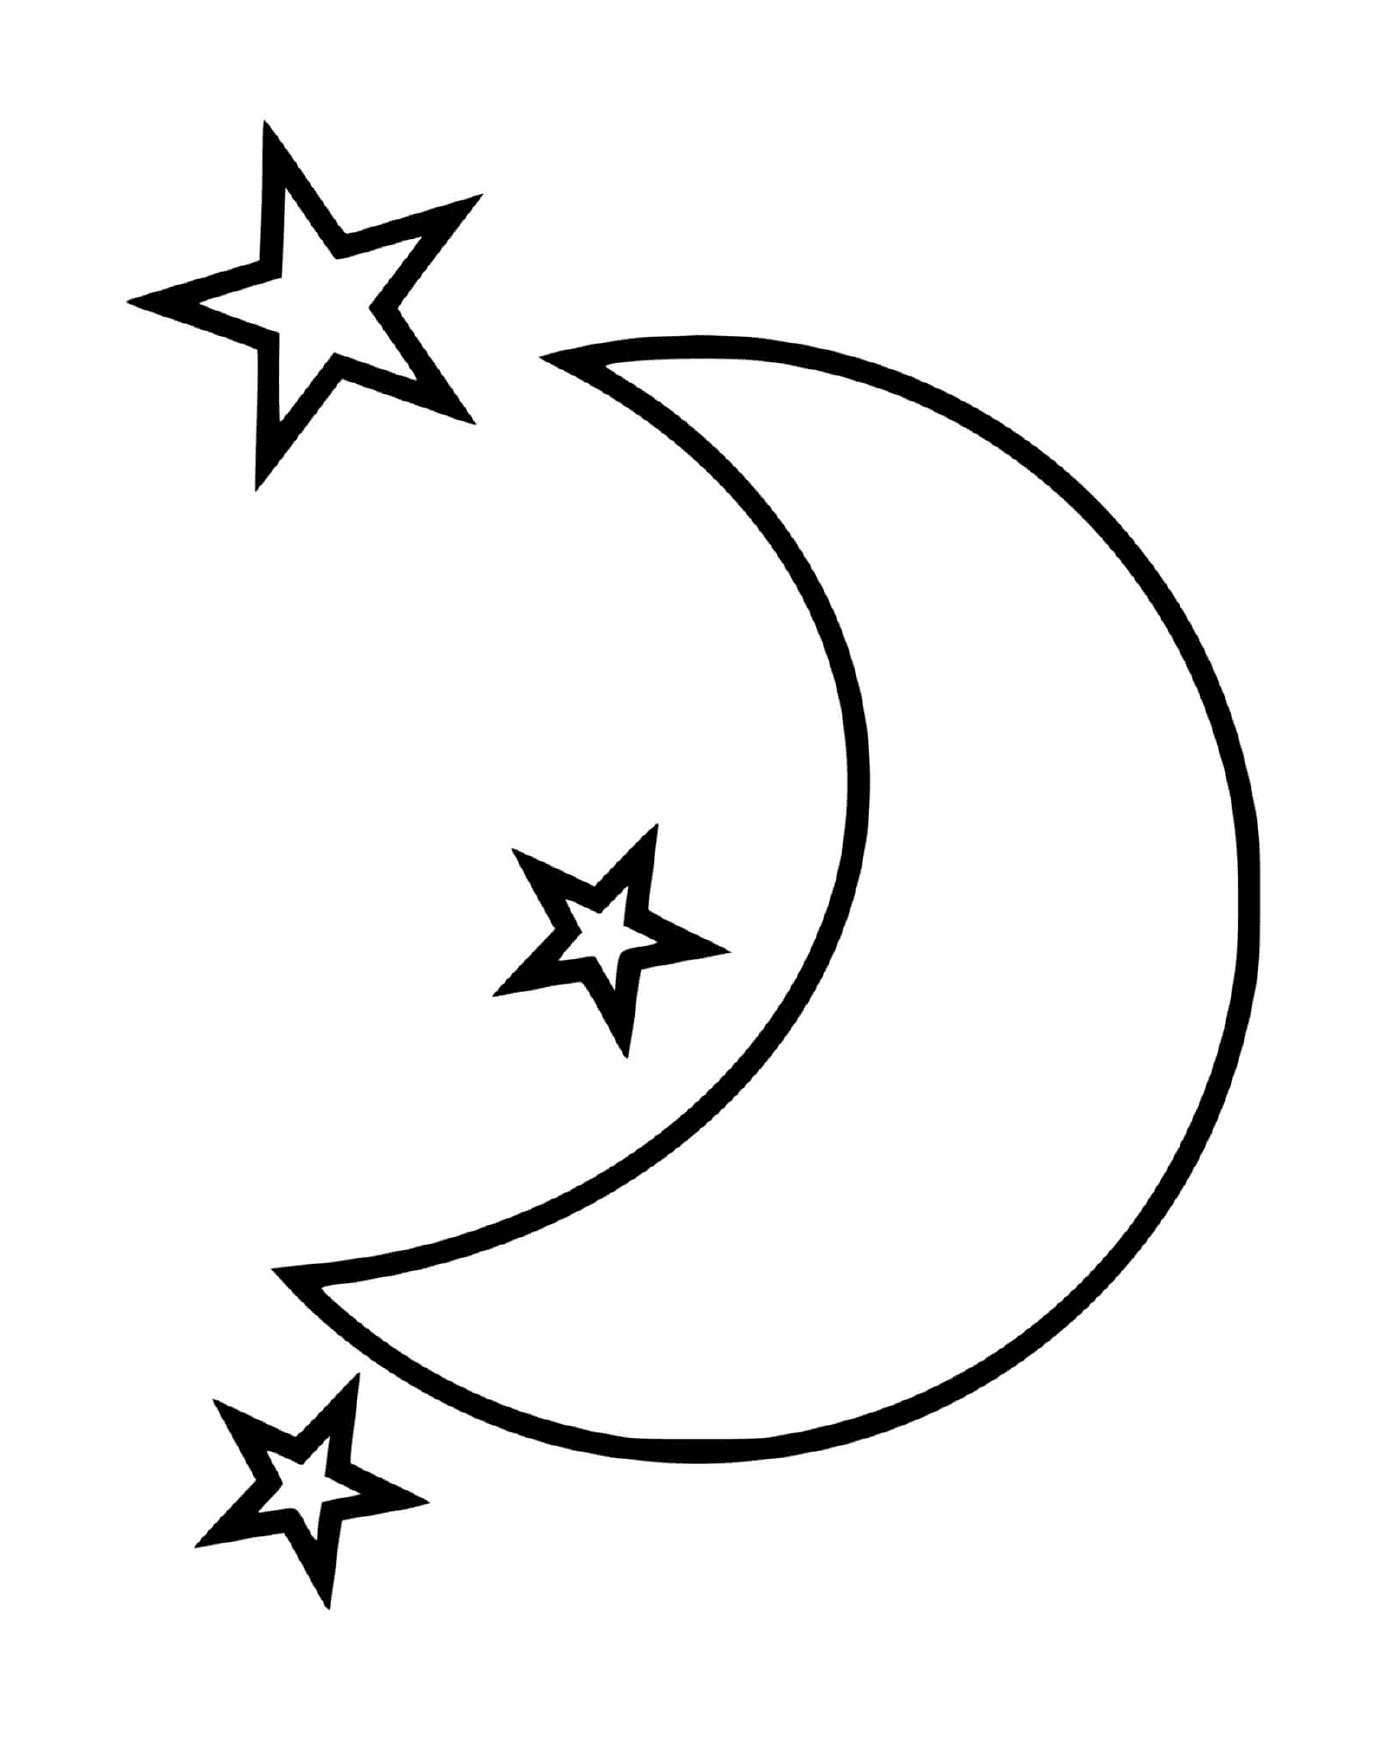  Mondsichel mit drei Sternen 